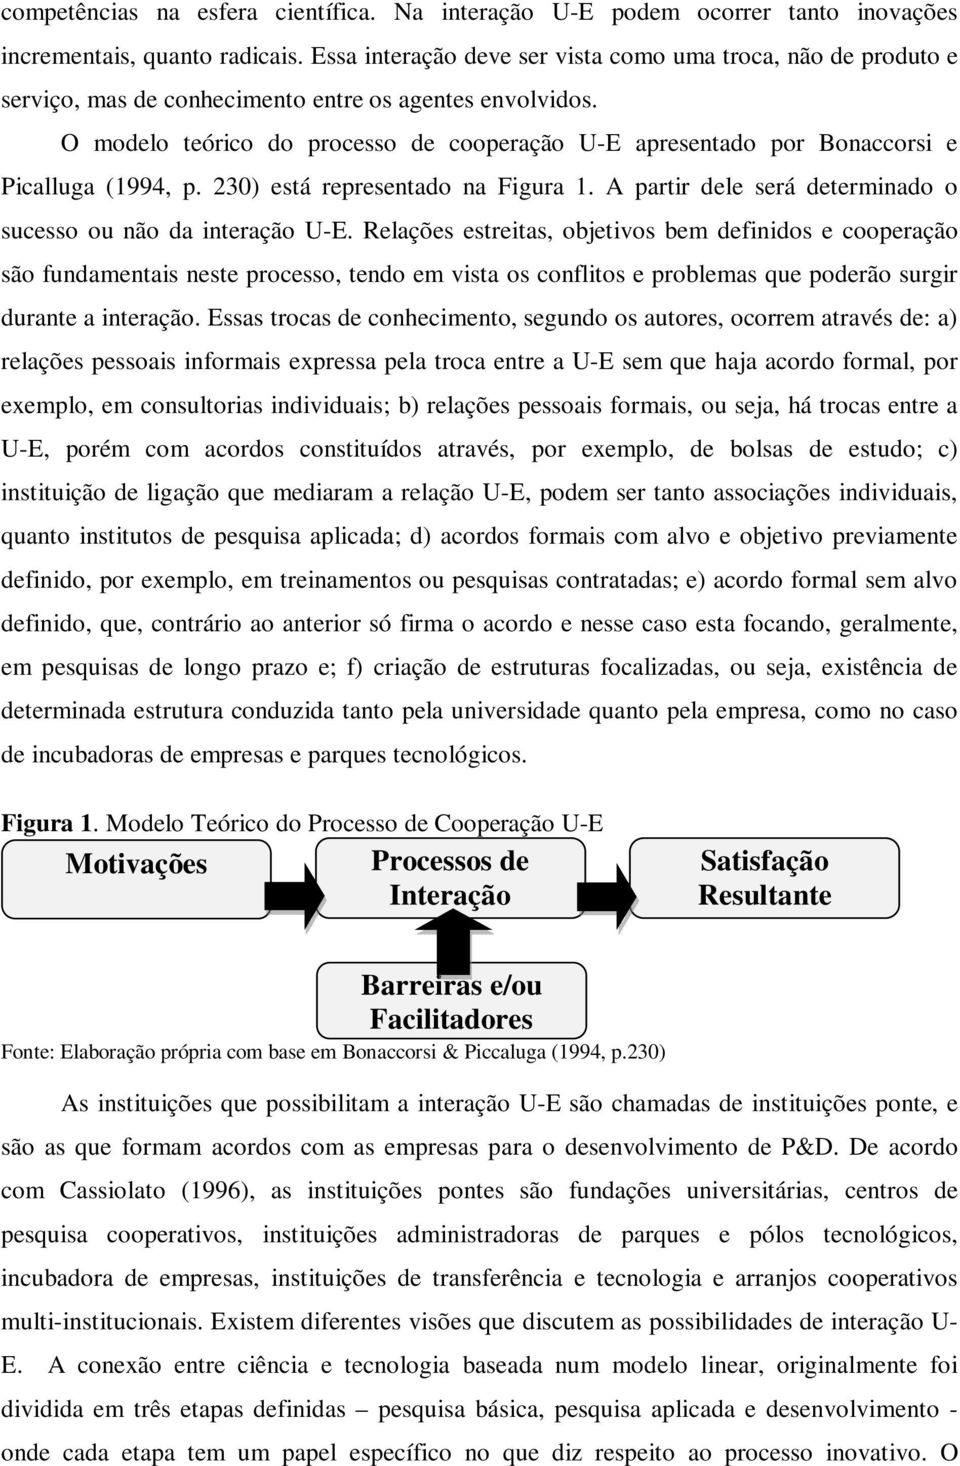 O modelo teórico do processo de cooperação U-E apresentado por Bonaccorsi e Picalluga (1994, p. 230) está representado na Figura 1. A partir dele será determinado o sucesso ou não da interação U-E.